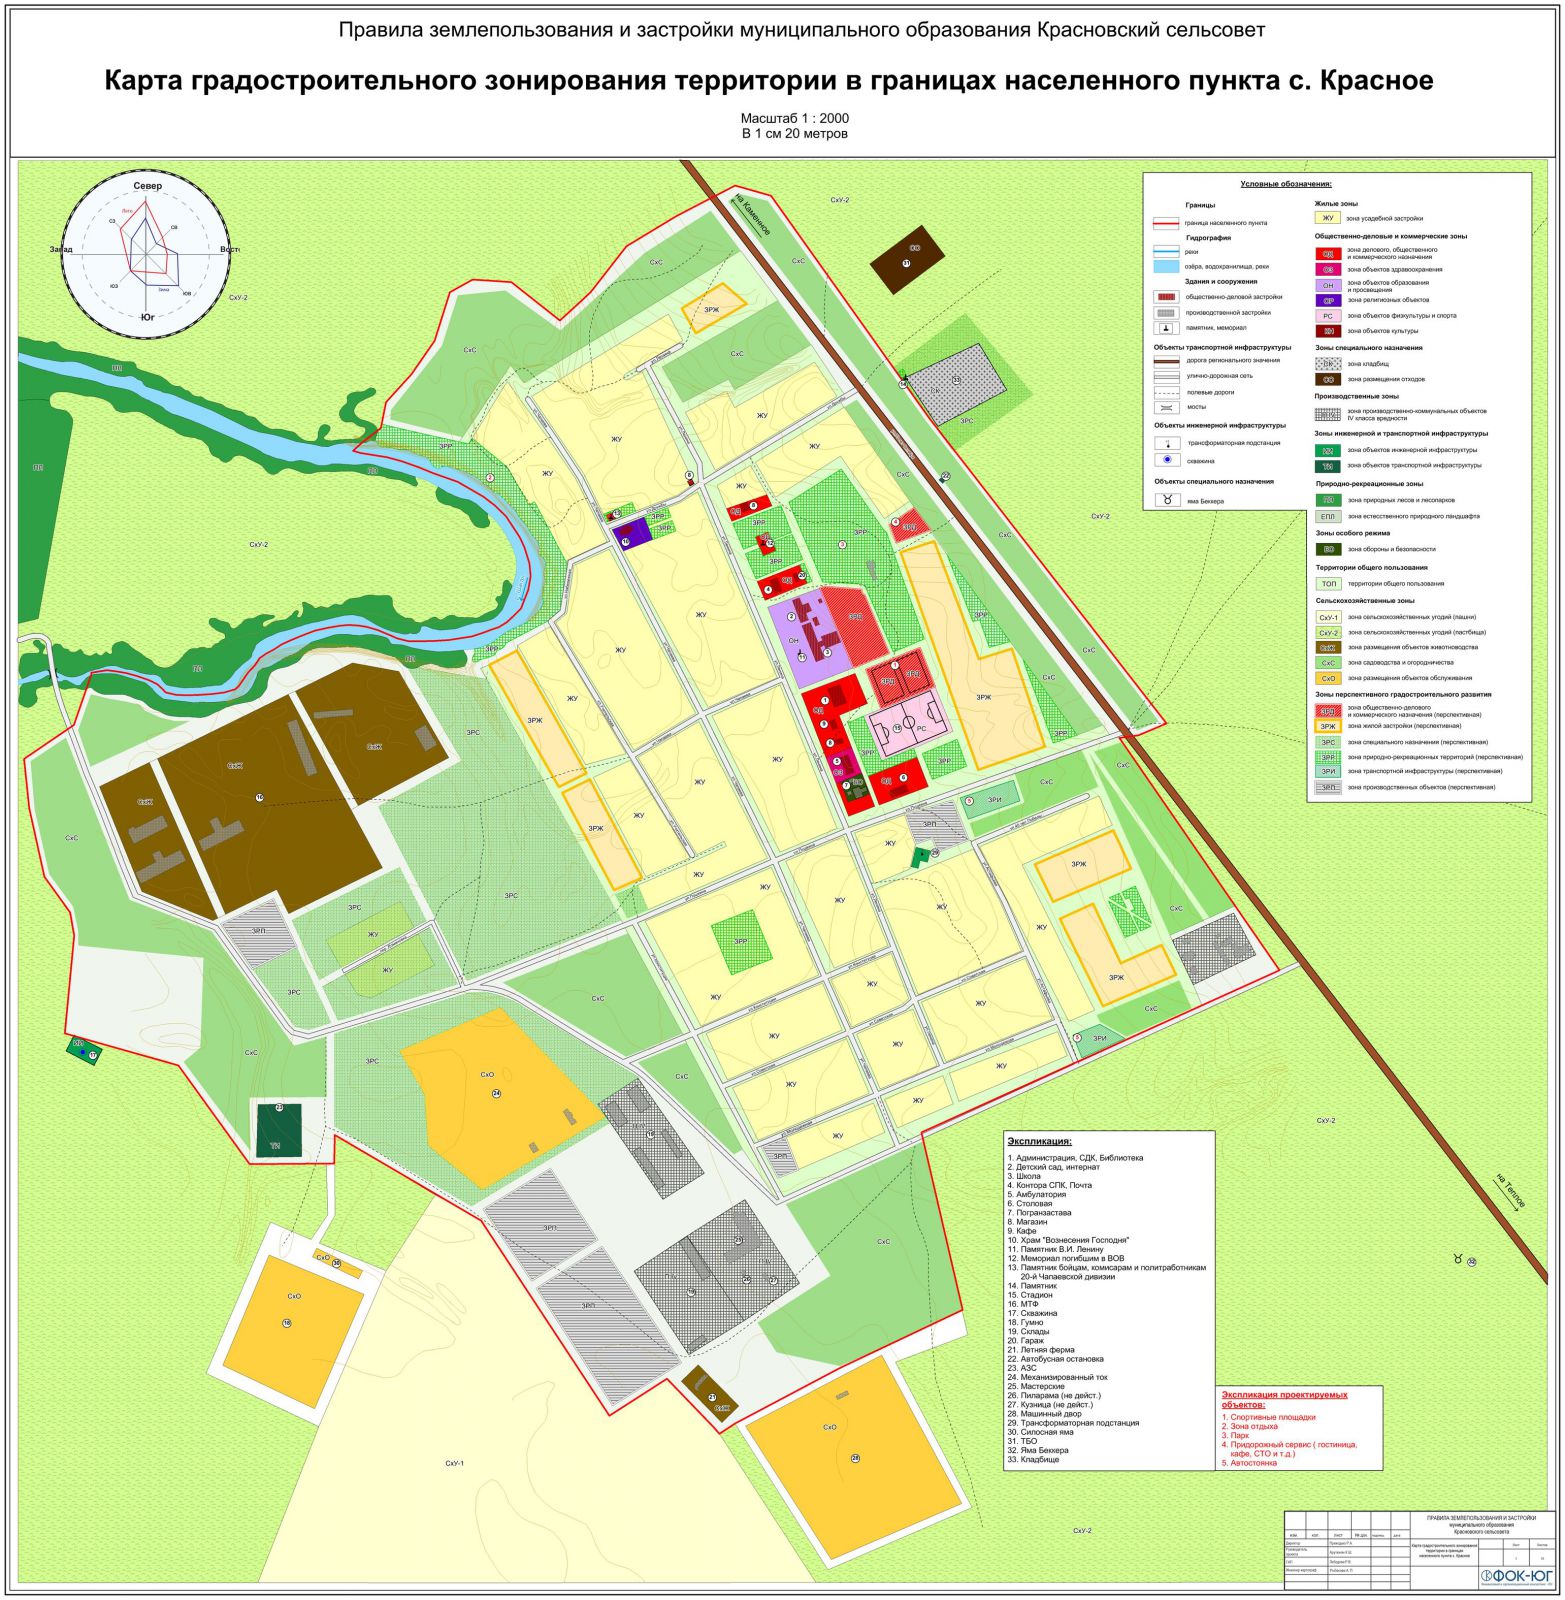 Карта градостроительного зонирования территории в границах населенного пункту с. Красное